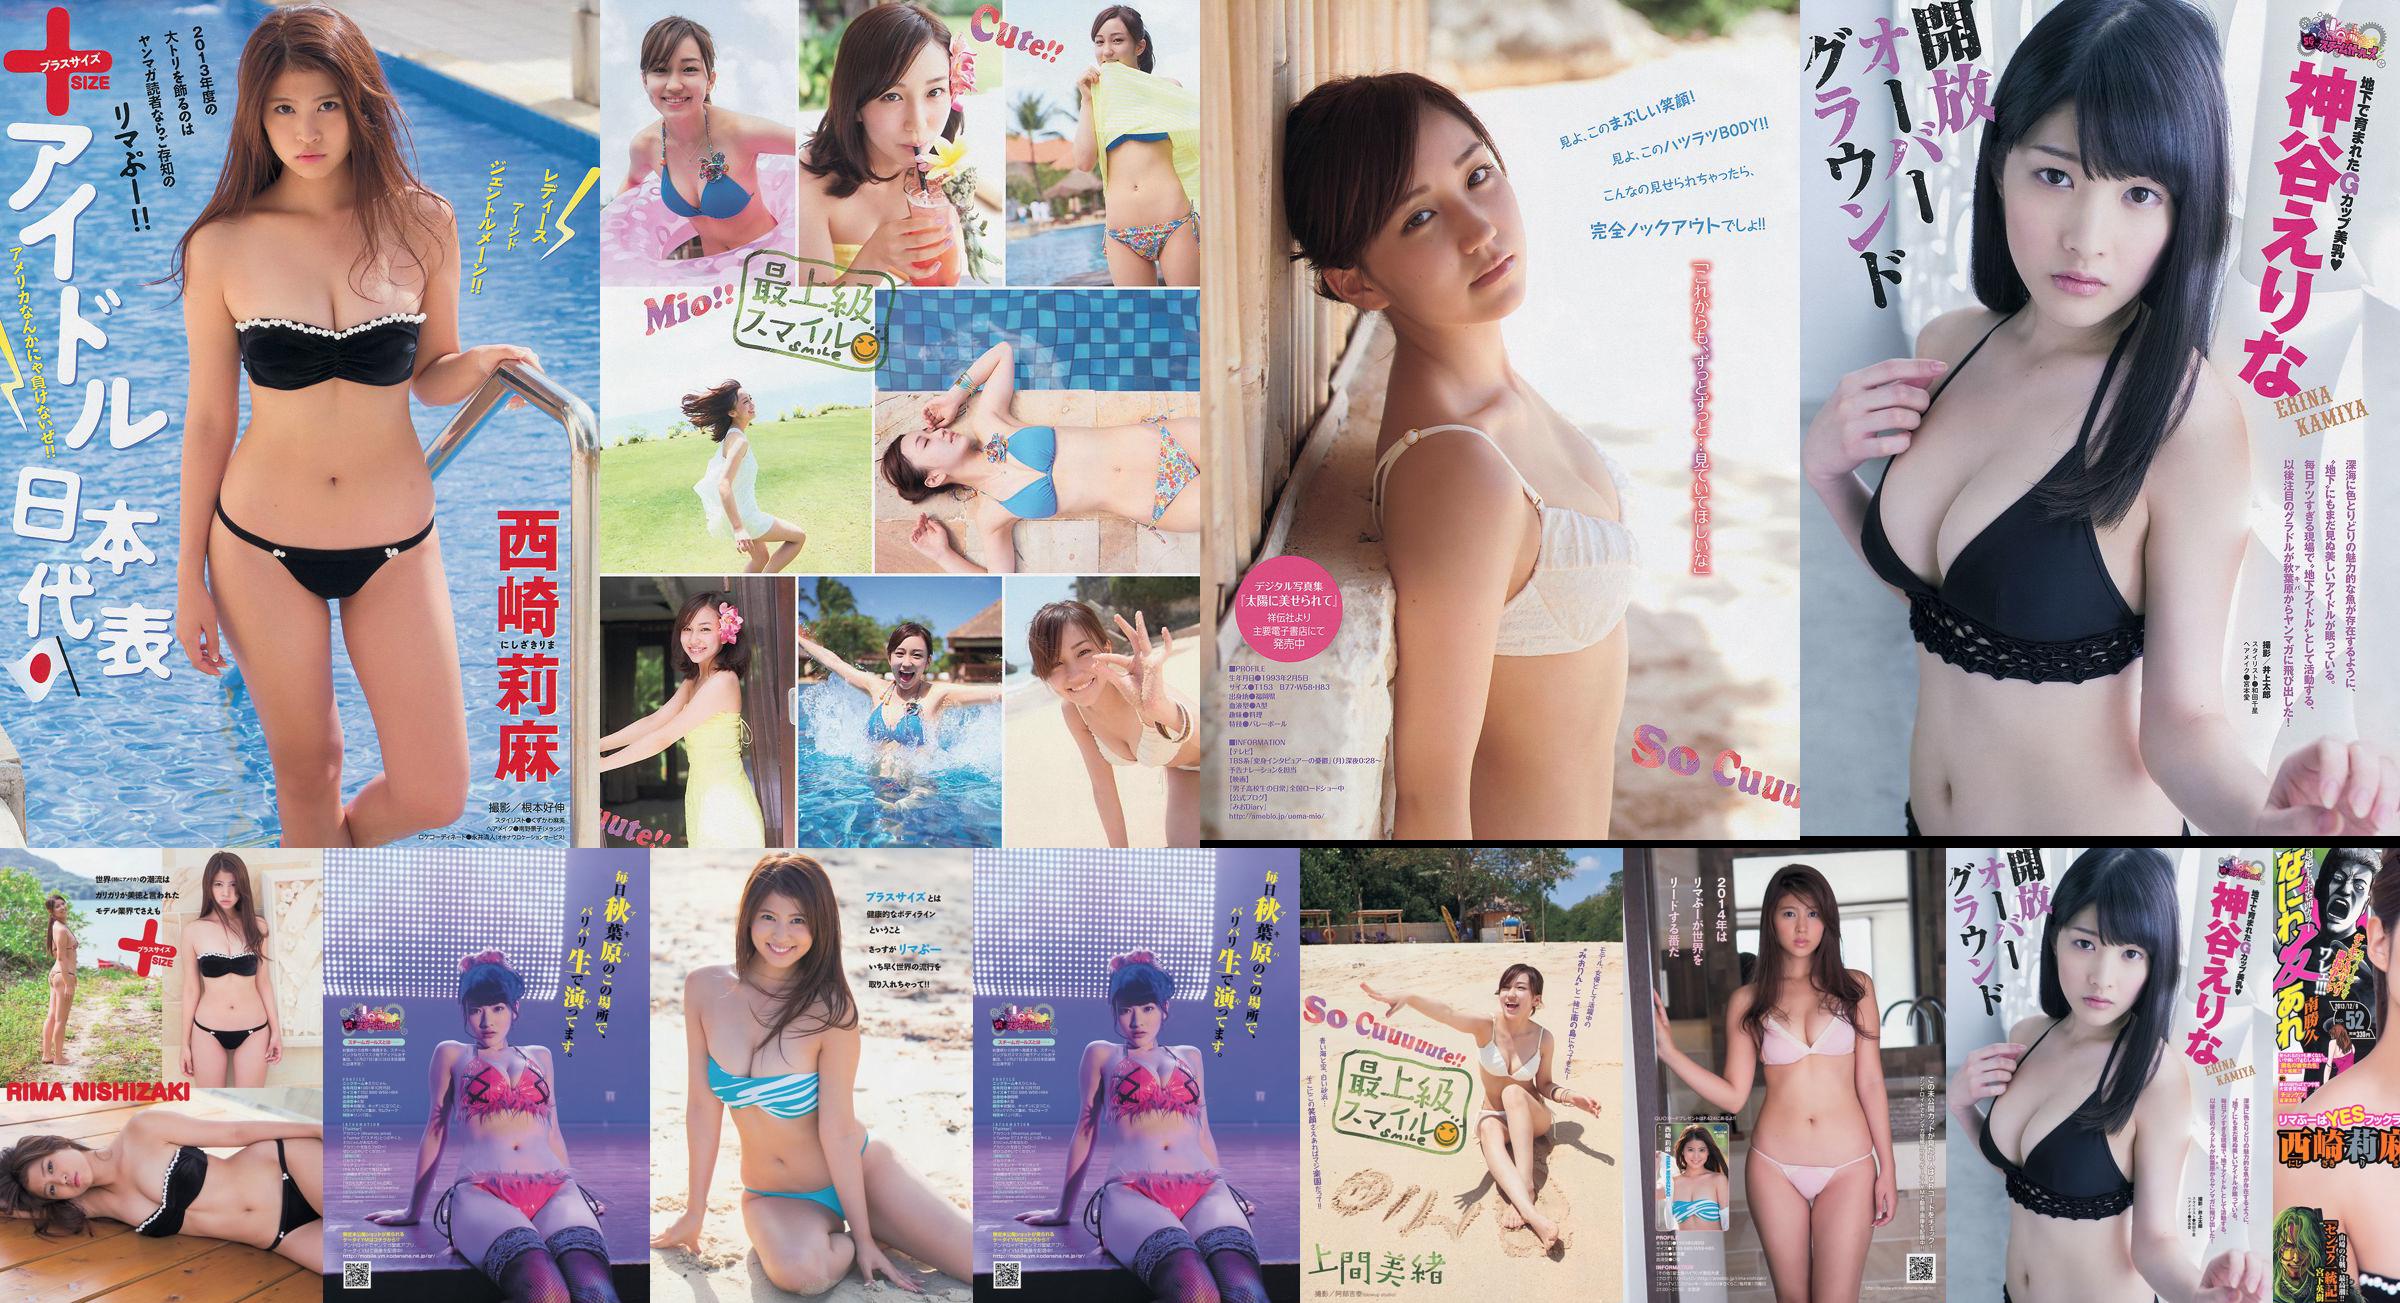 [Revista joven] Rima Nishizaki Mio Uema Erina Kamiya 2013 No.52 Photo Moshi No.98b0c4 Página 2